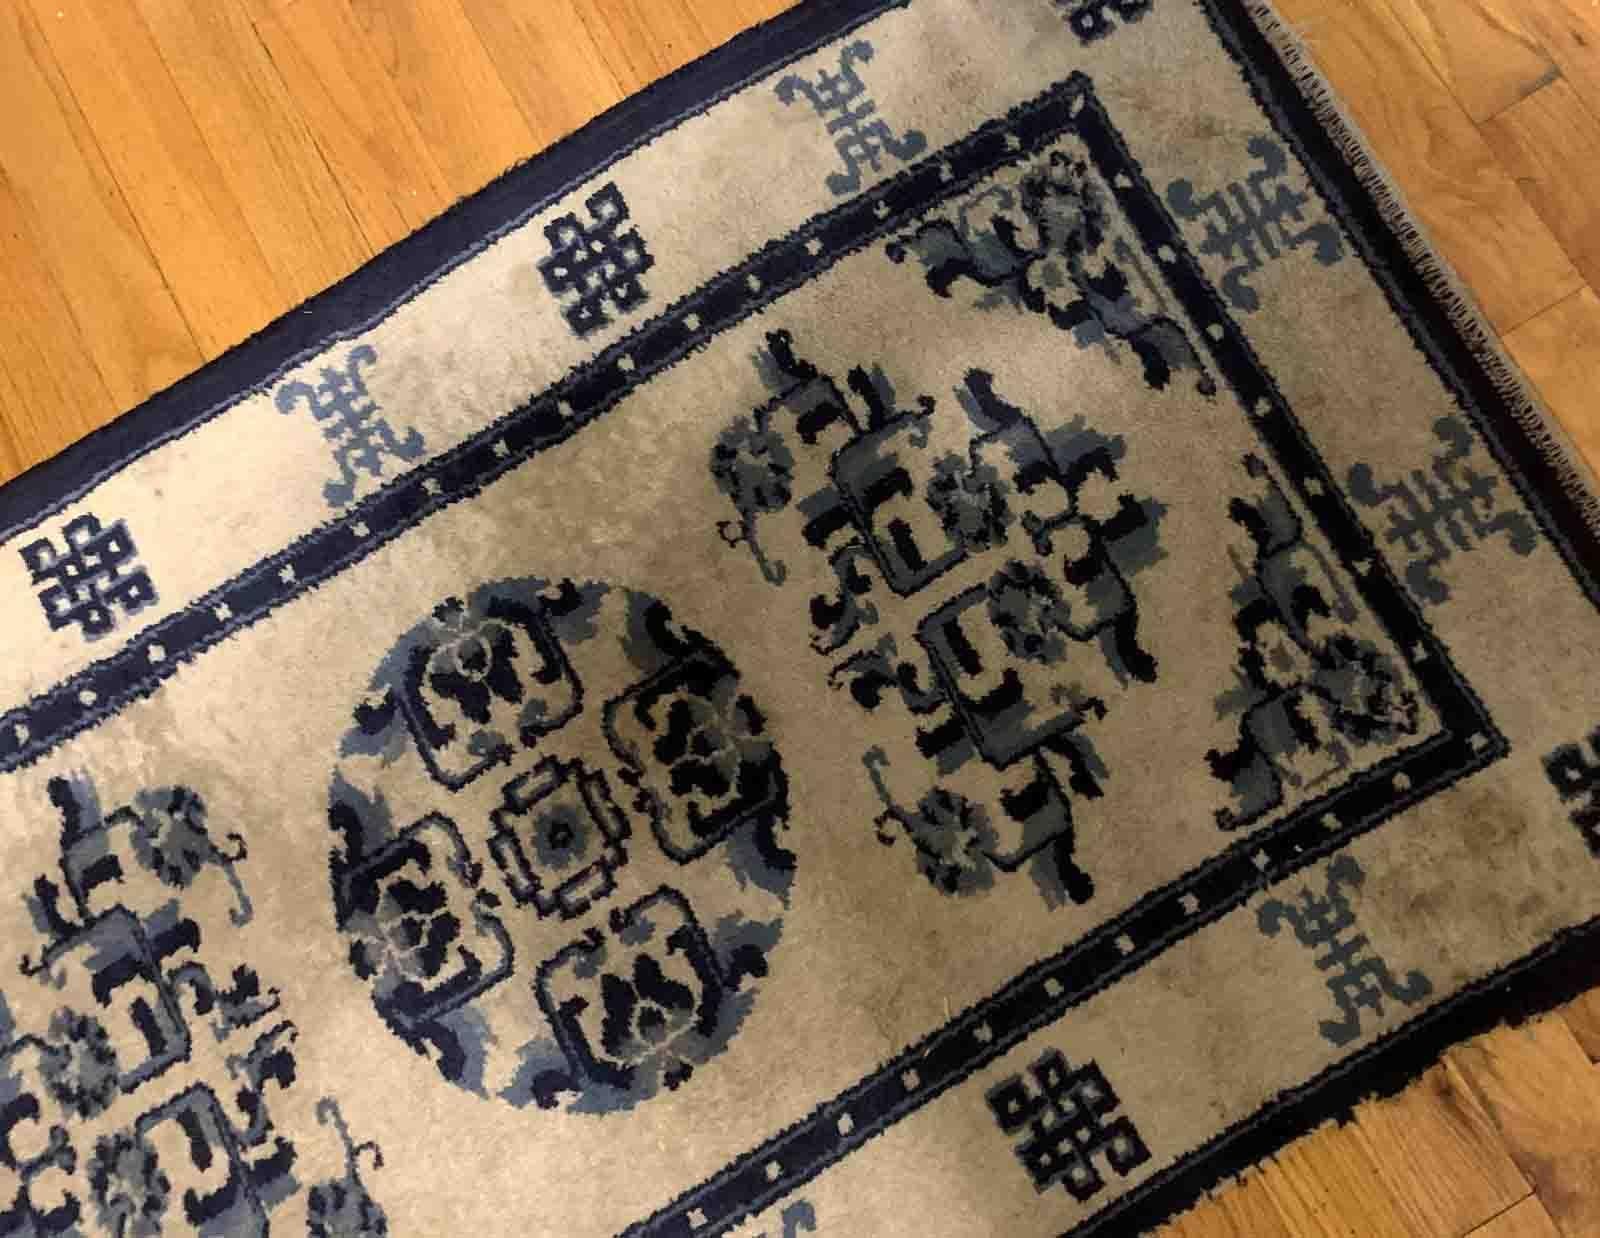 Handgefertigter antiker chinesischer Teppich aus Peking in den Farben Beige und Blau. Der Teppich stammt aus dem Anfang des 20. Jahrhunderts und ist in gutem Originalzustand.

-Zustand: original gut,

-CIRCA: 1900er Jahre,

-Größe: 2,2' x